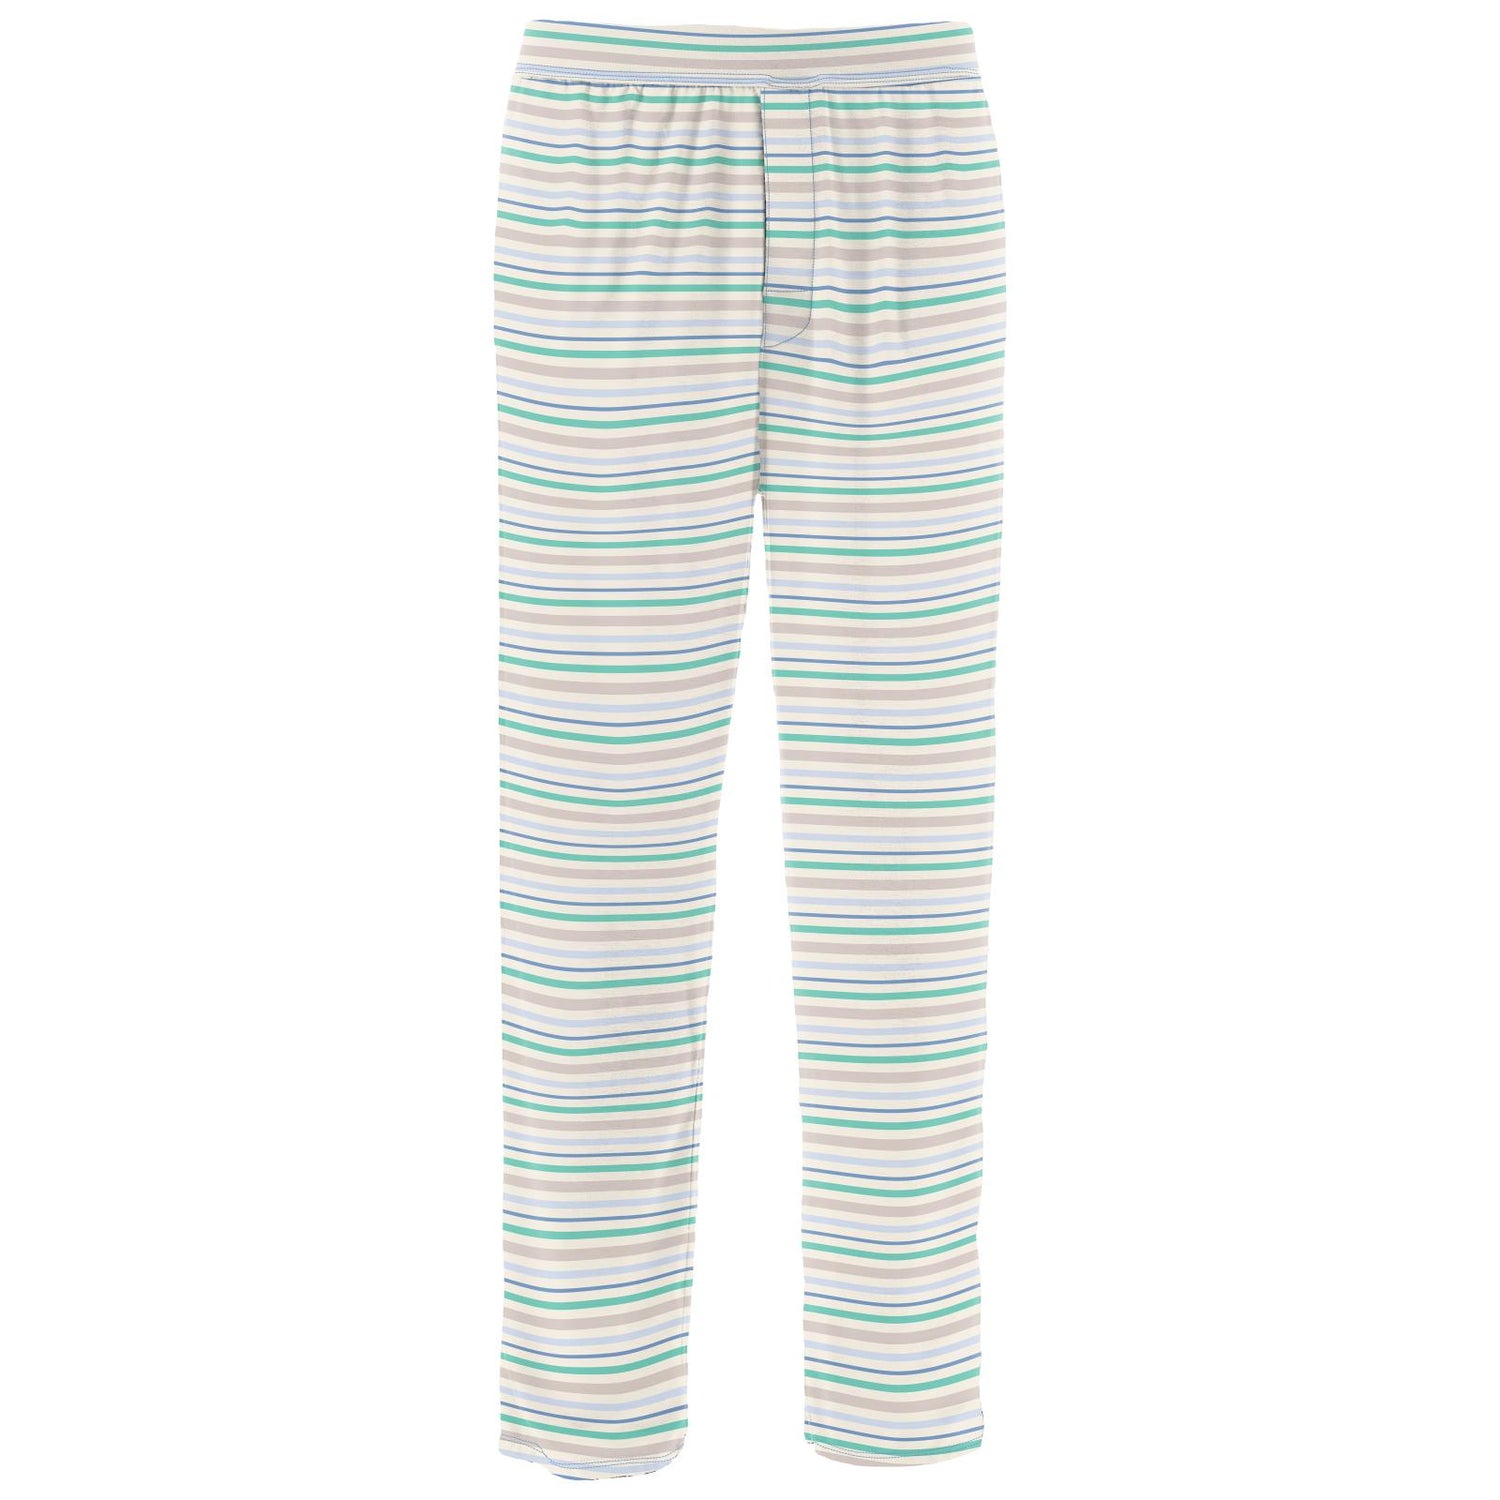 Men's Print Pajama Pants in Mythical Stripe